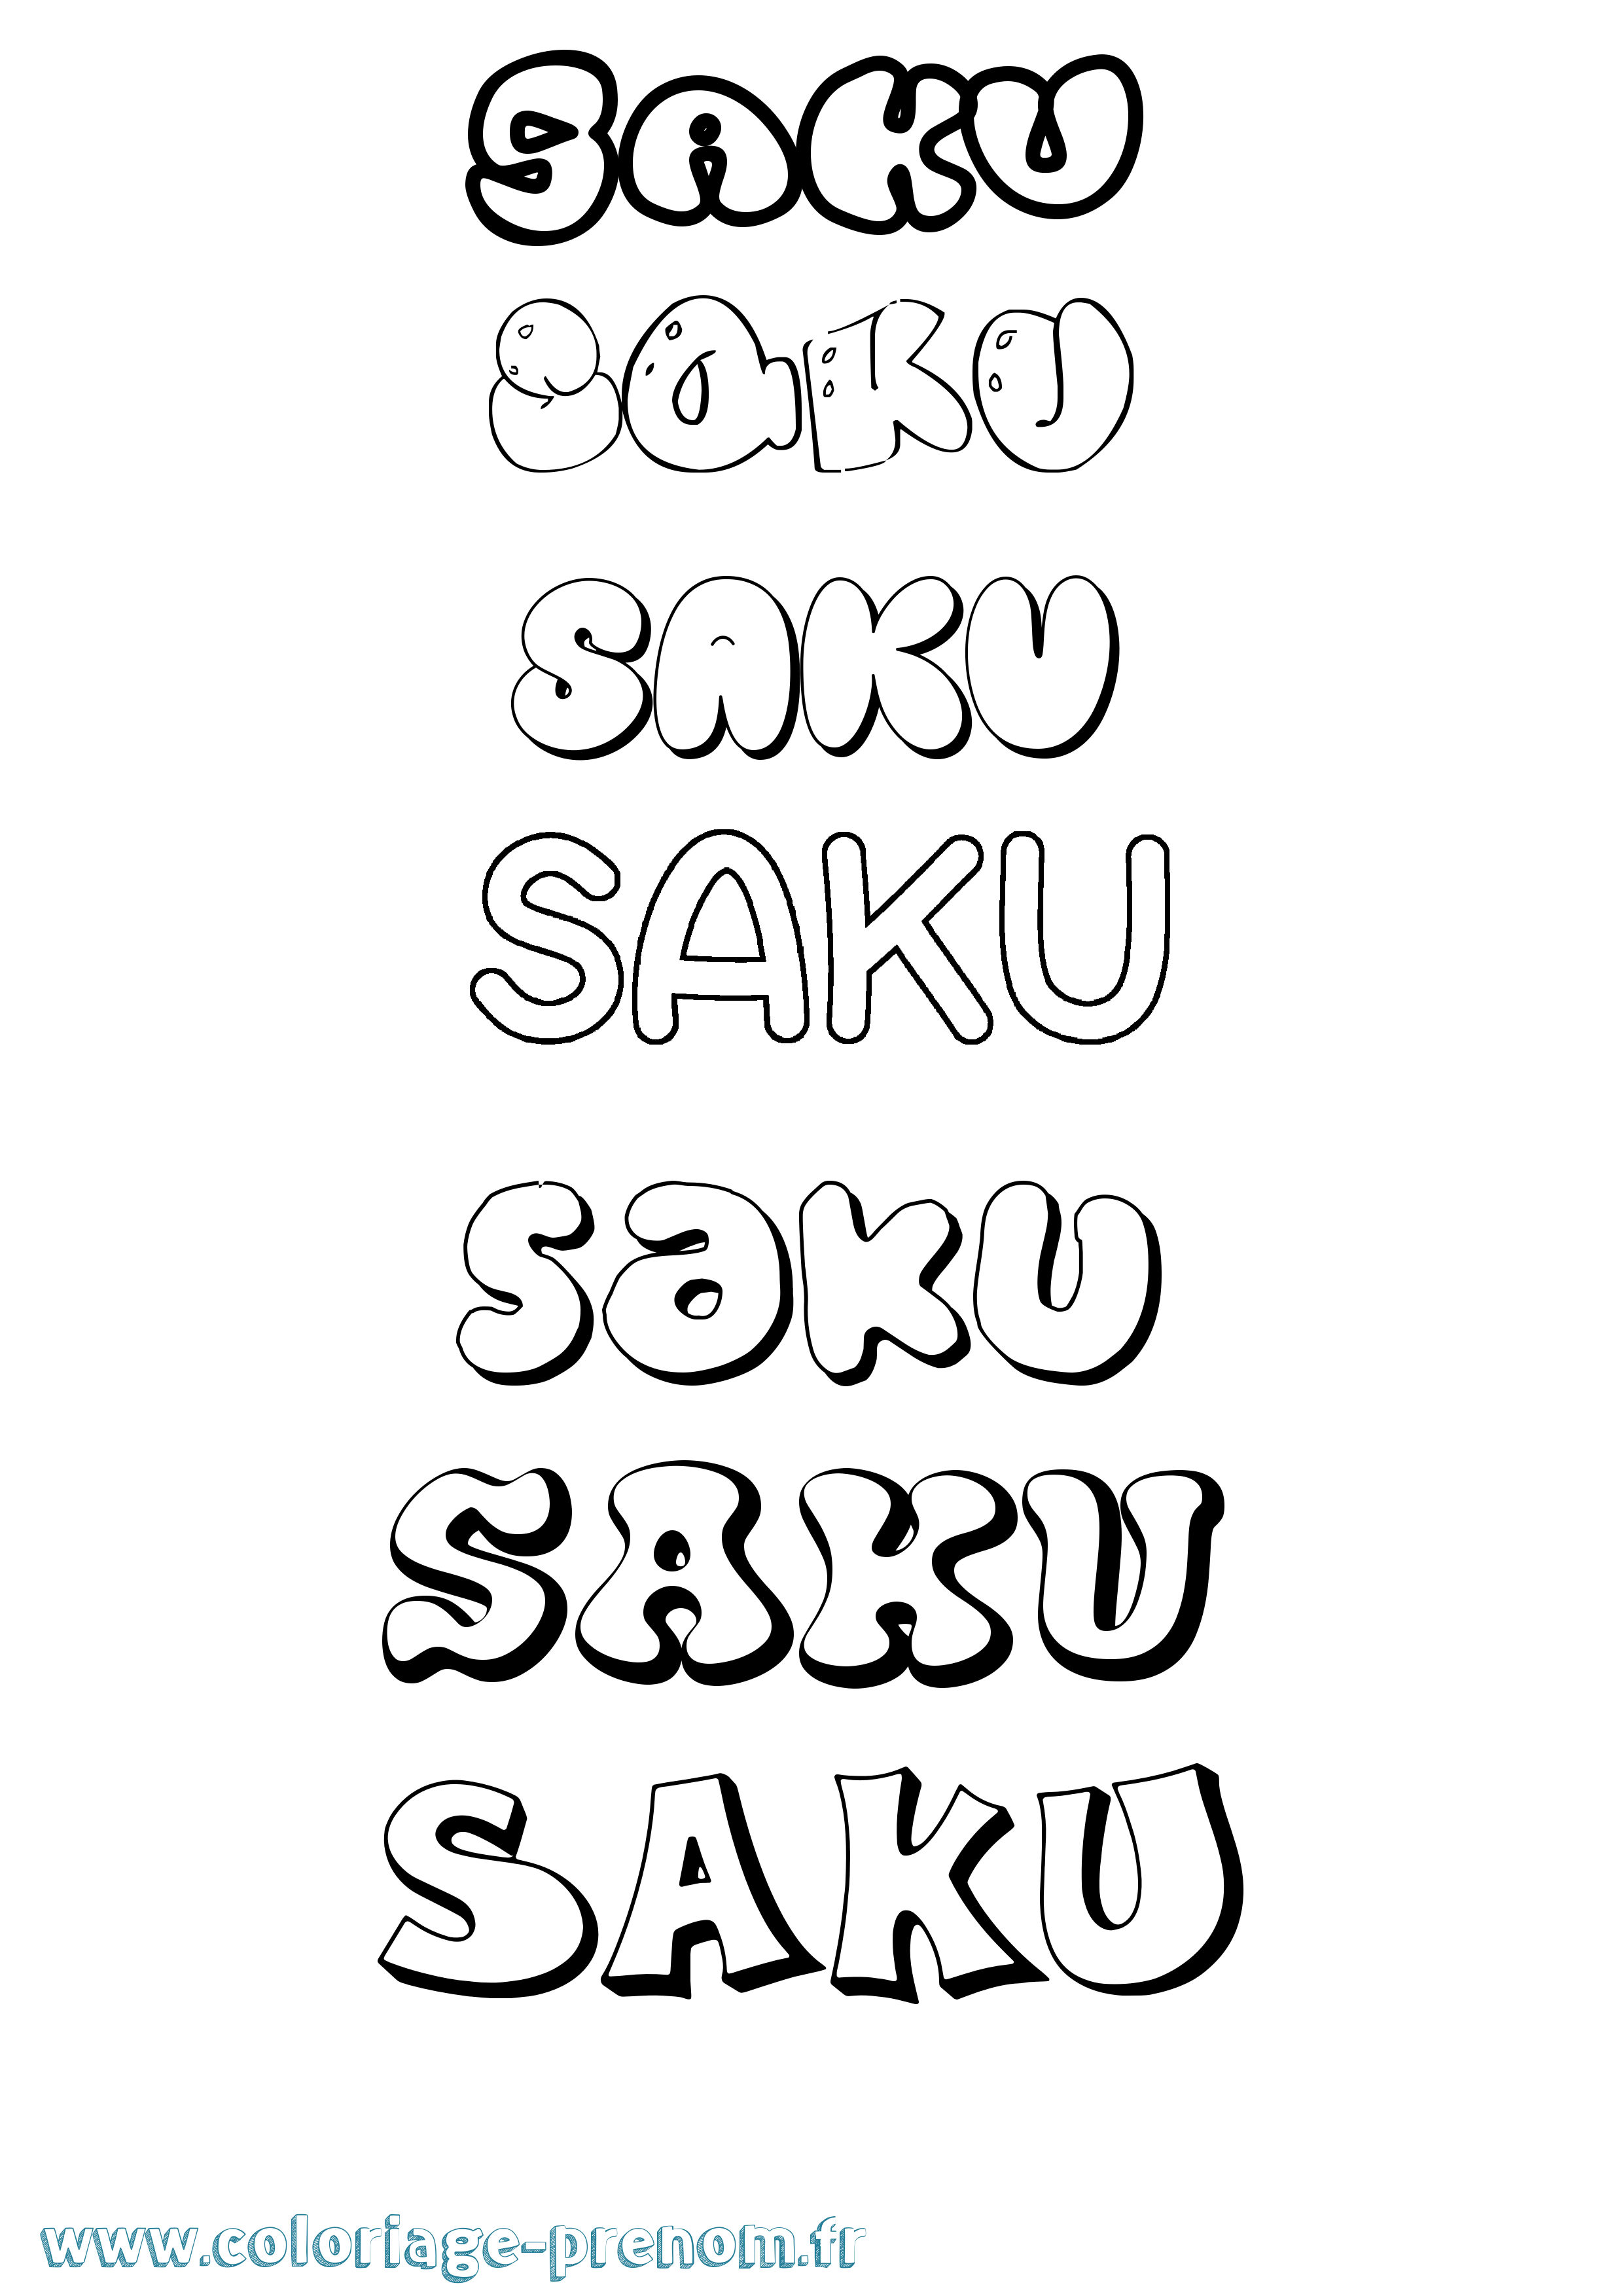 Coloriage prénom Saku Bubble